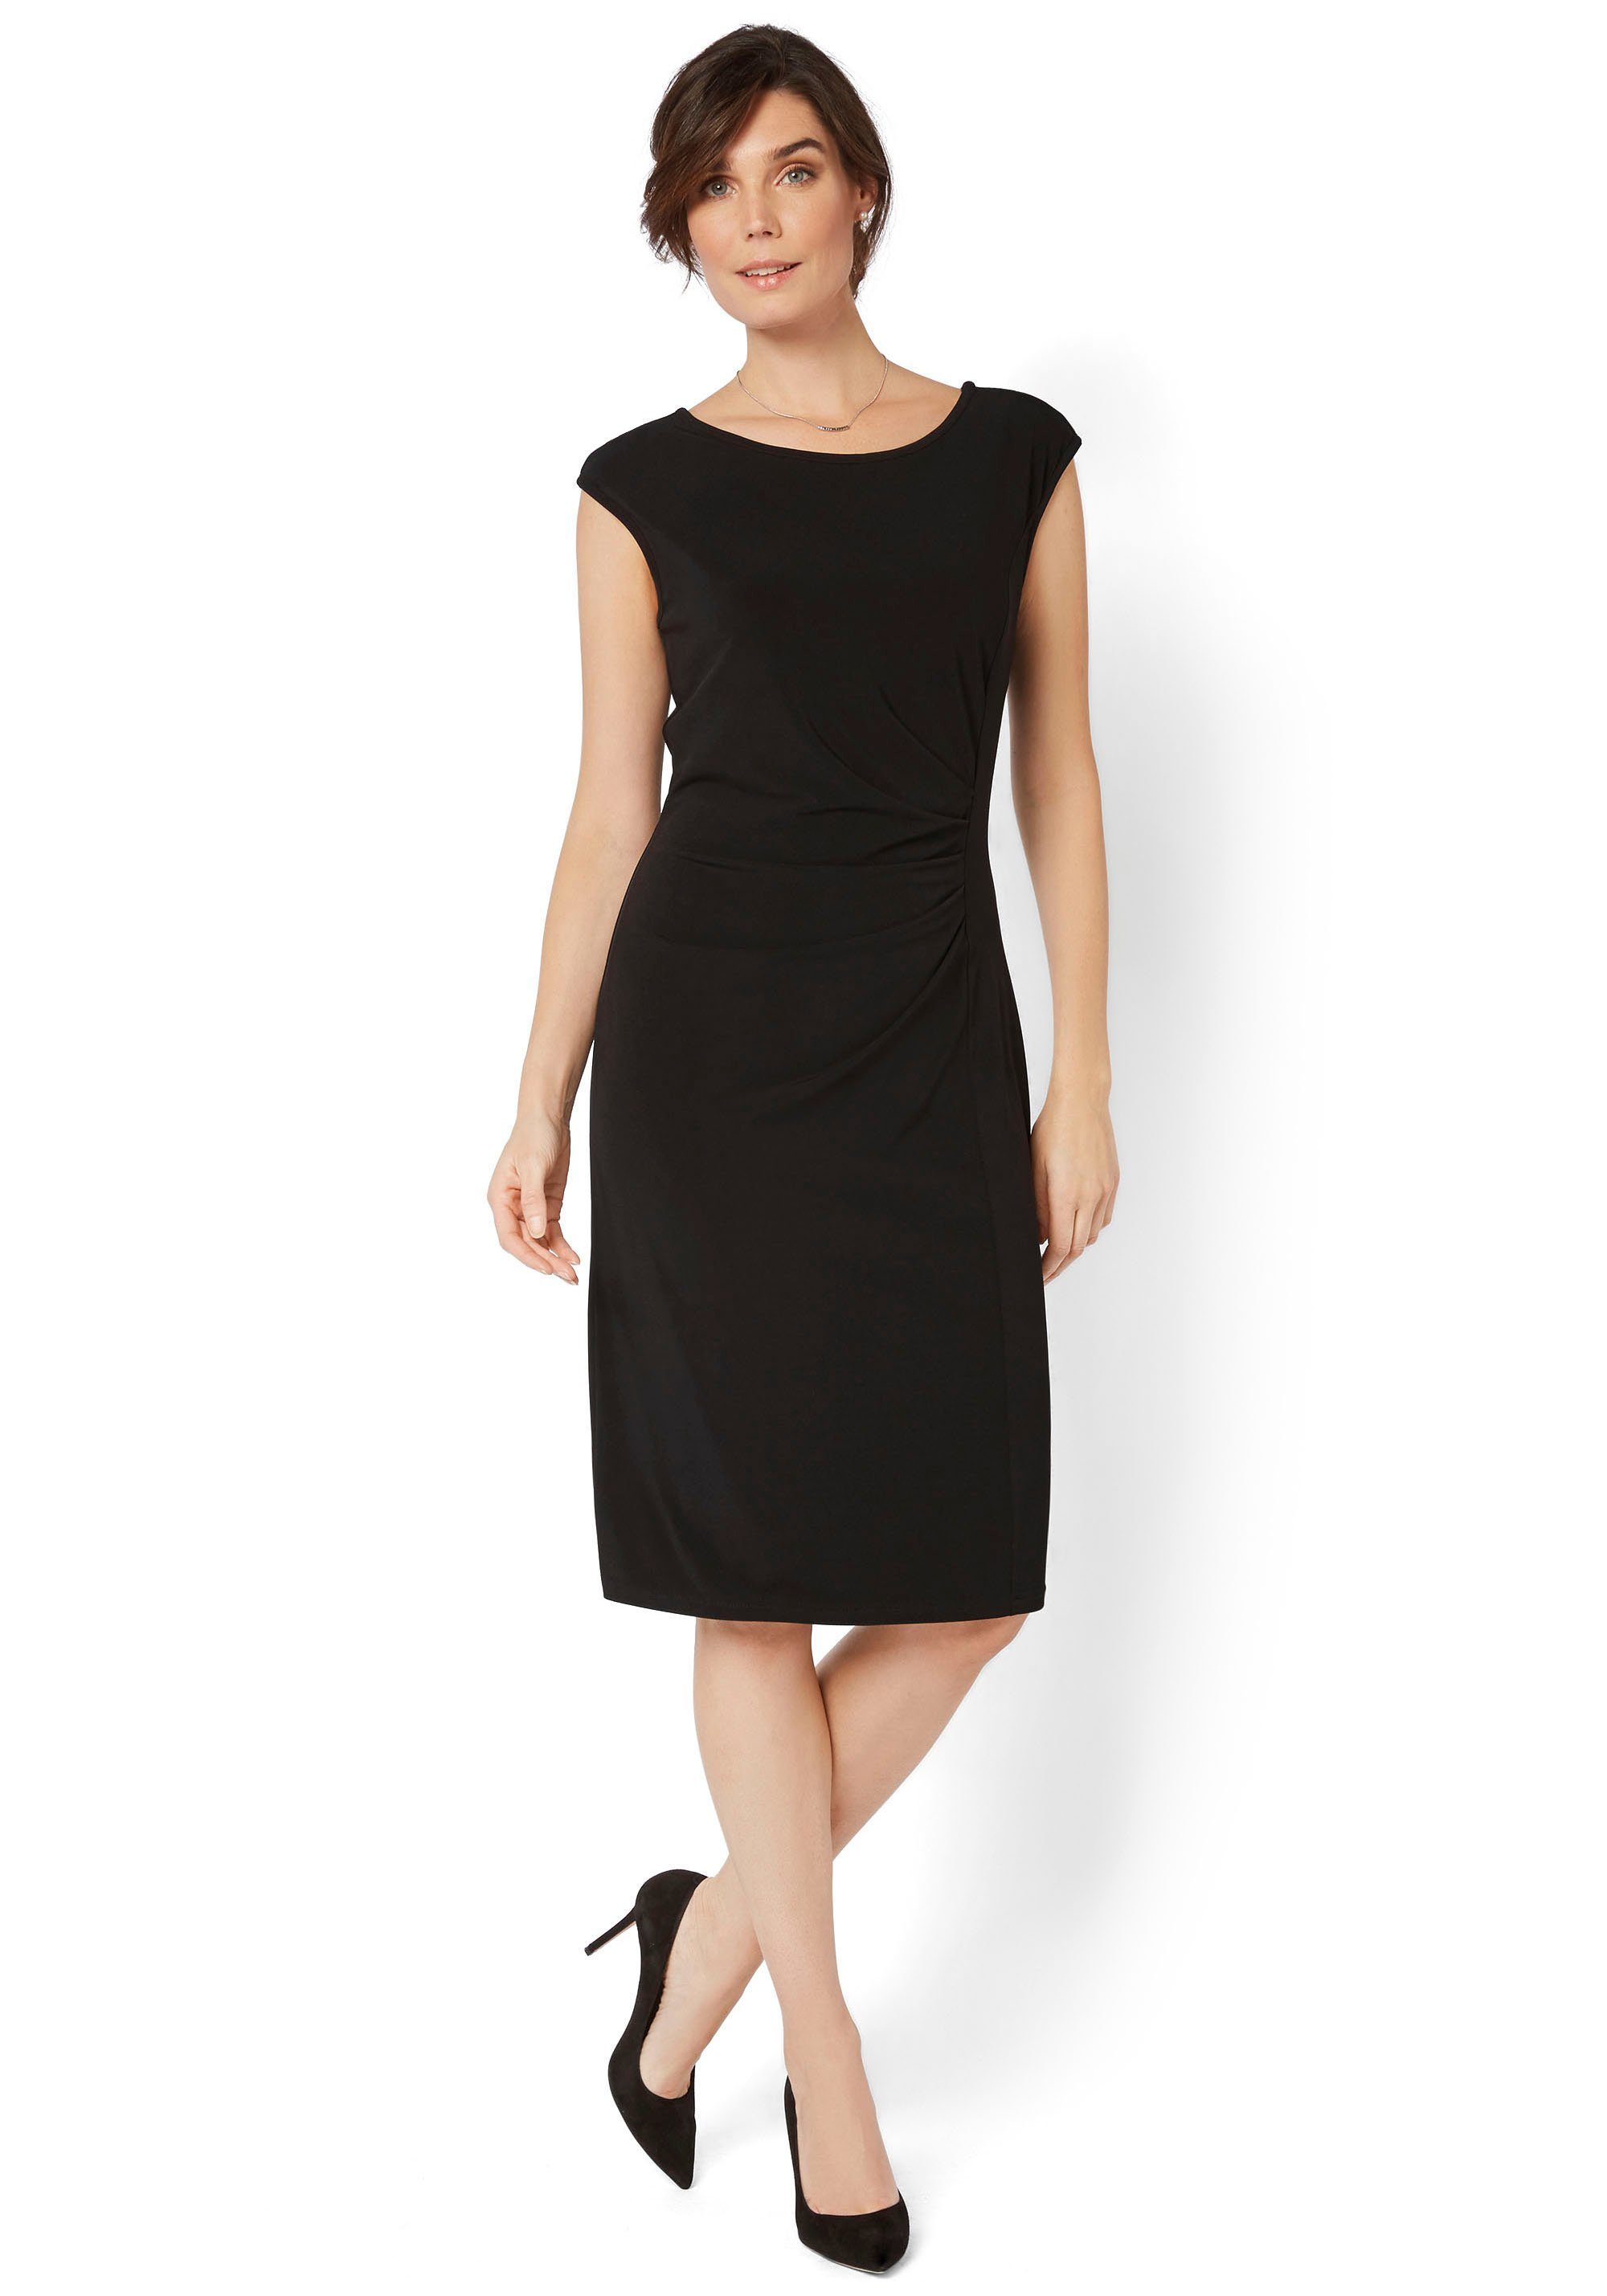 HERMANN LANGE Collection Jerseykleid mit eleganter Raffung schwarz